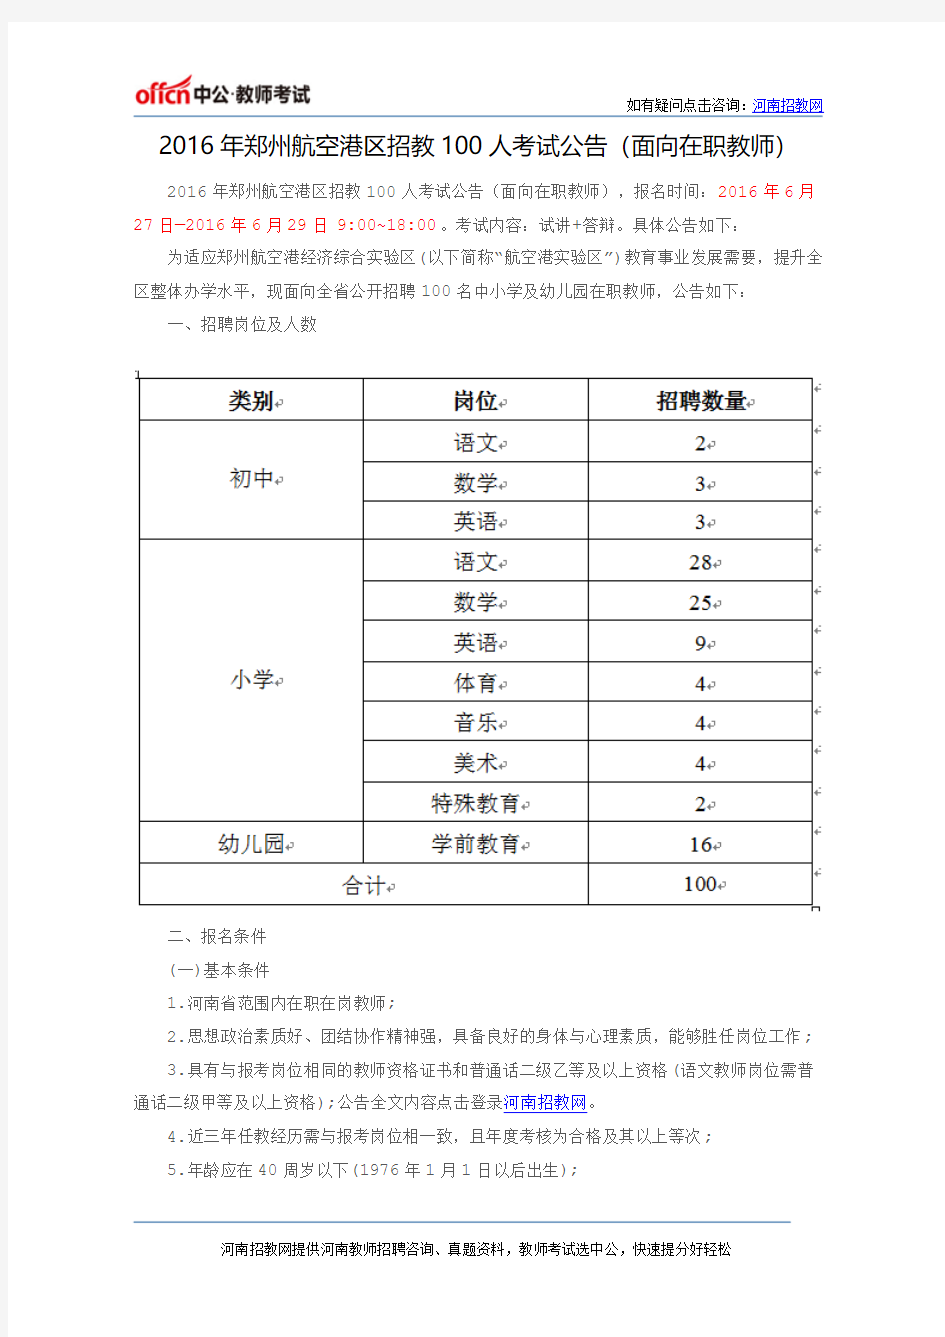 2016年郑州航空港区招教100人考试公告(面向在职教师)